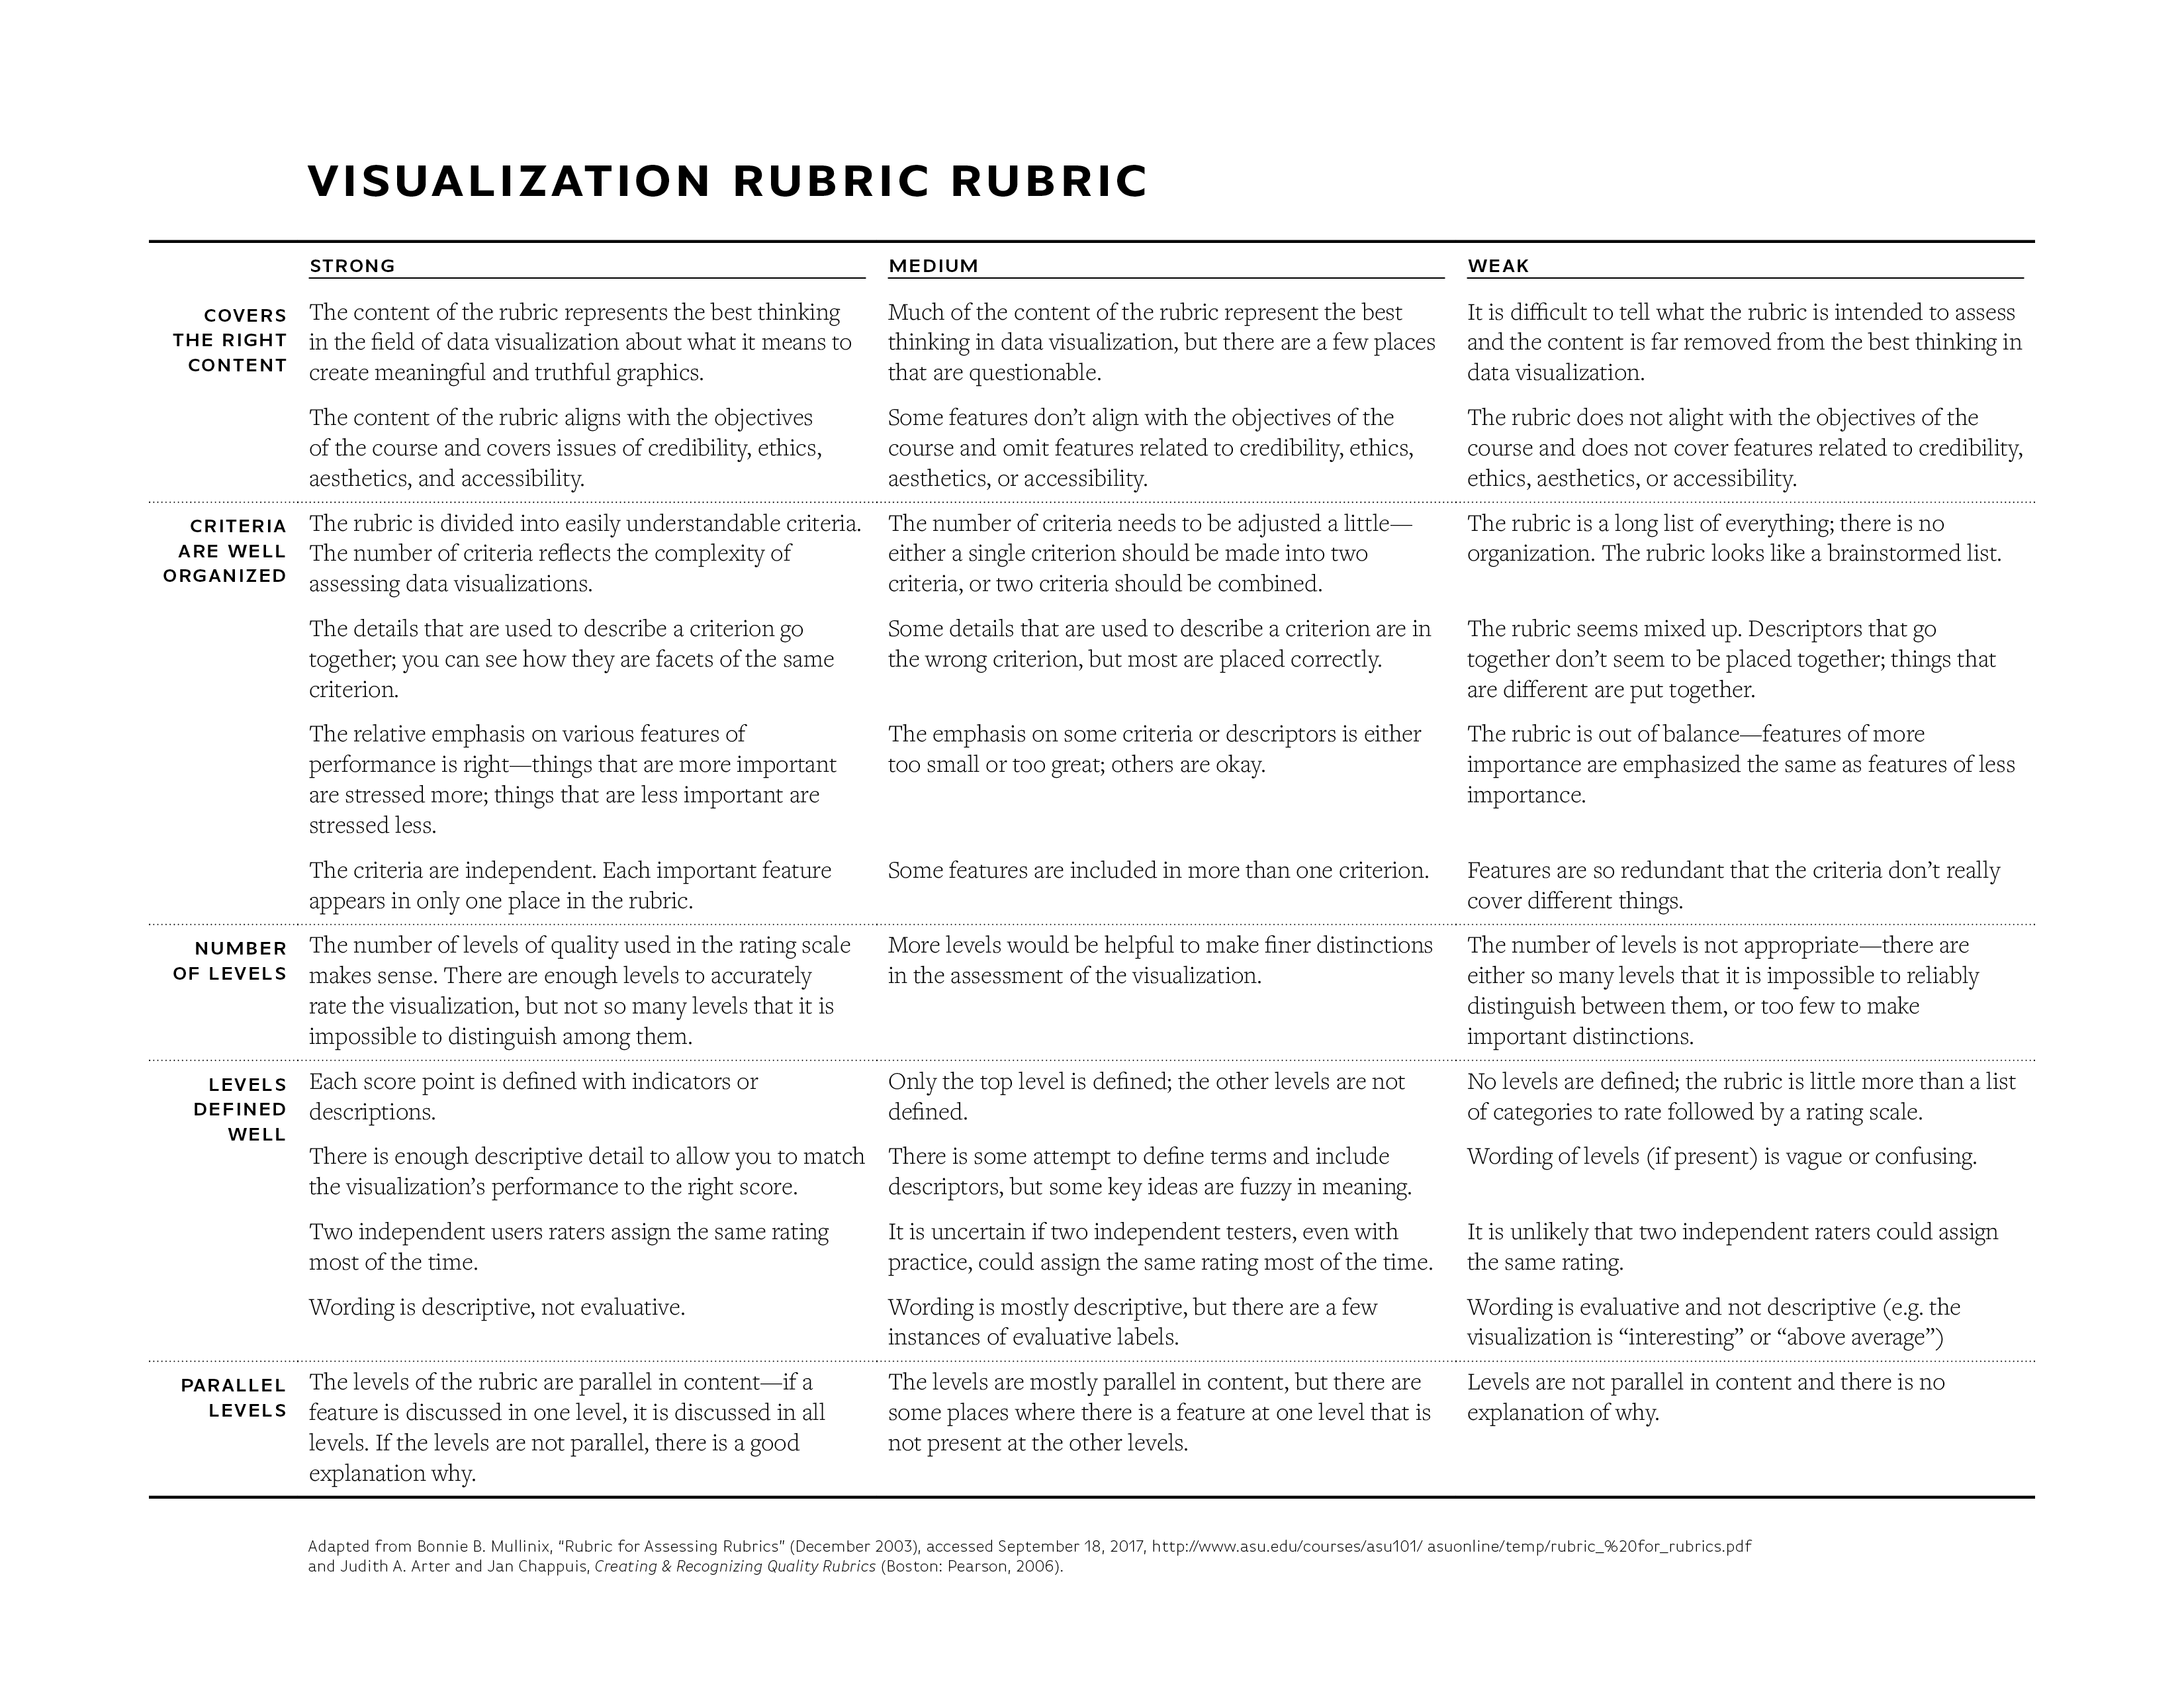 Visualization rubric rubric